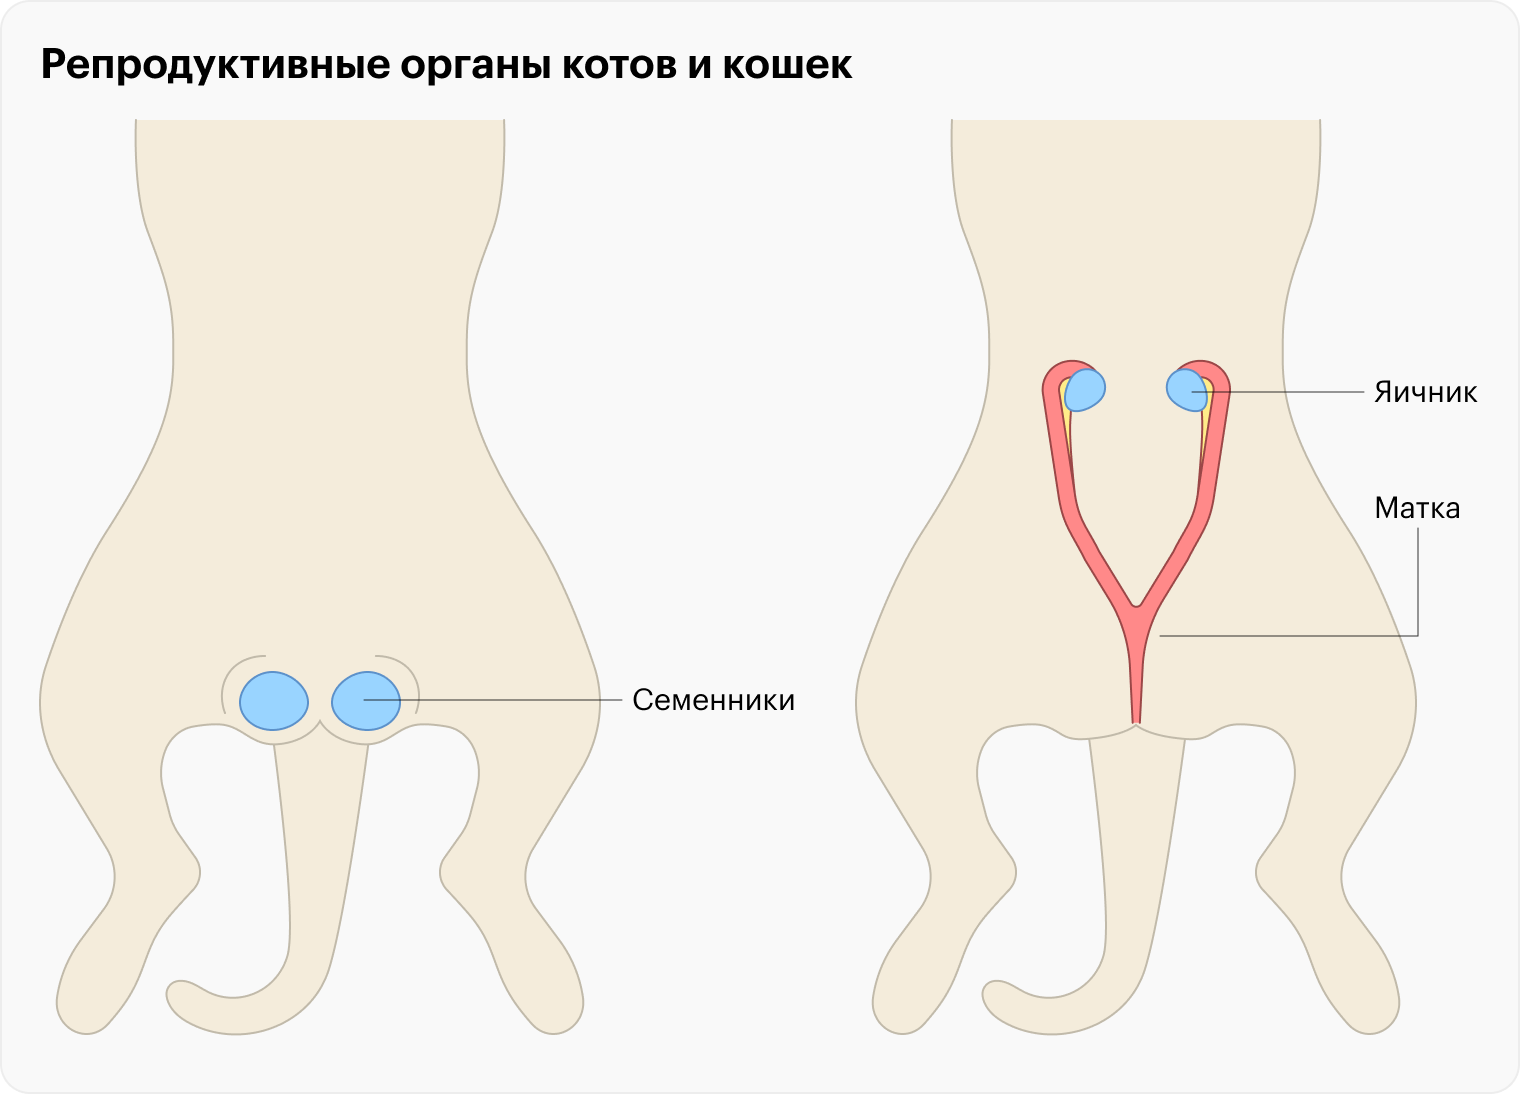 Это упрощенное изображение репродуктивных органов котов и кошек, которые удаляют во время кастрации